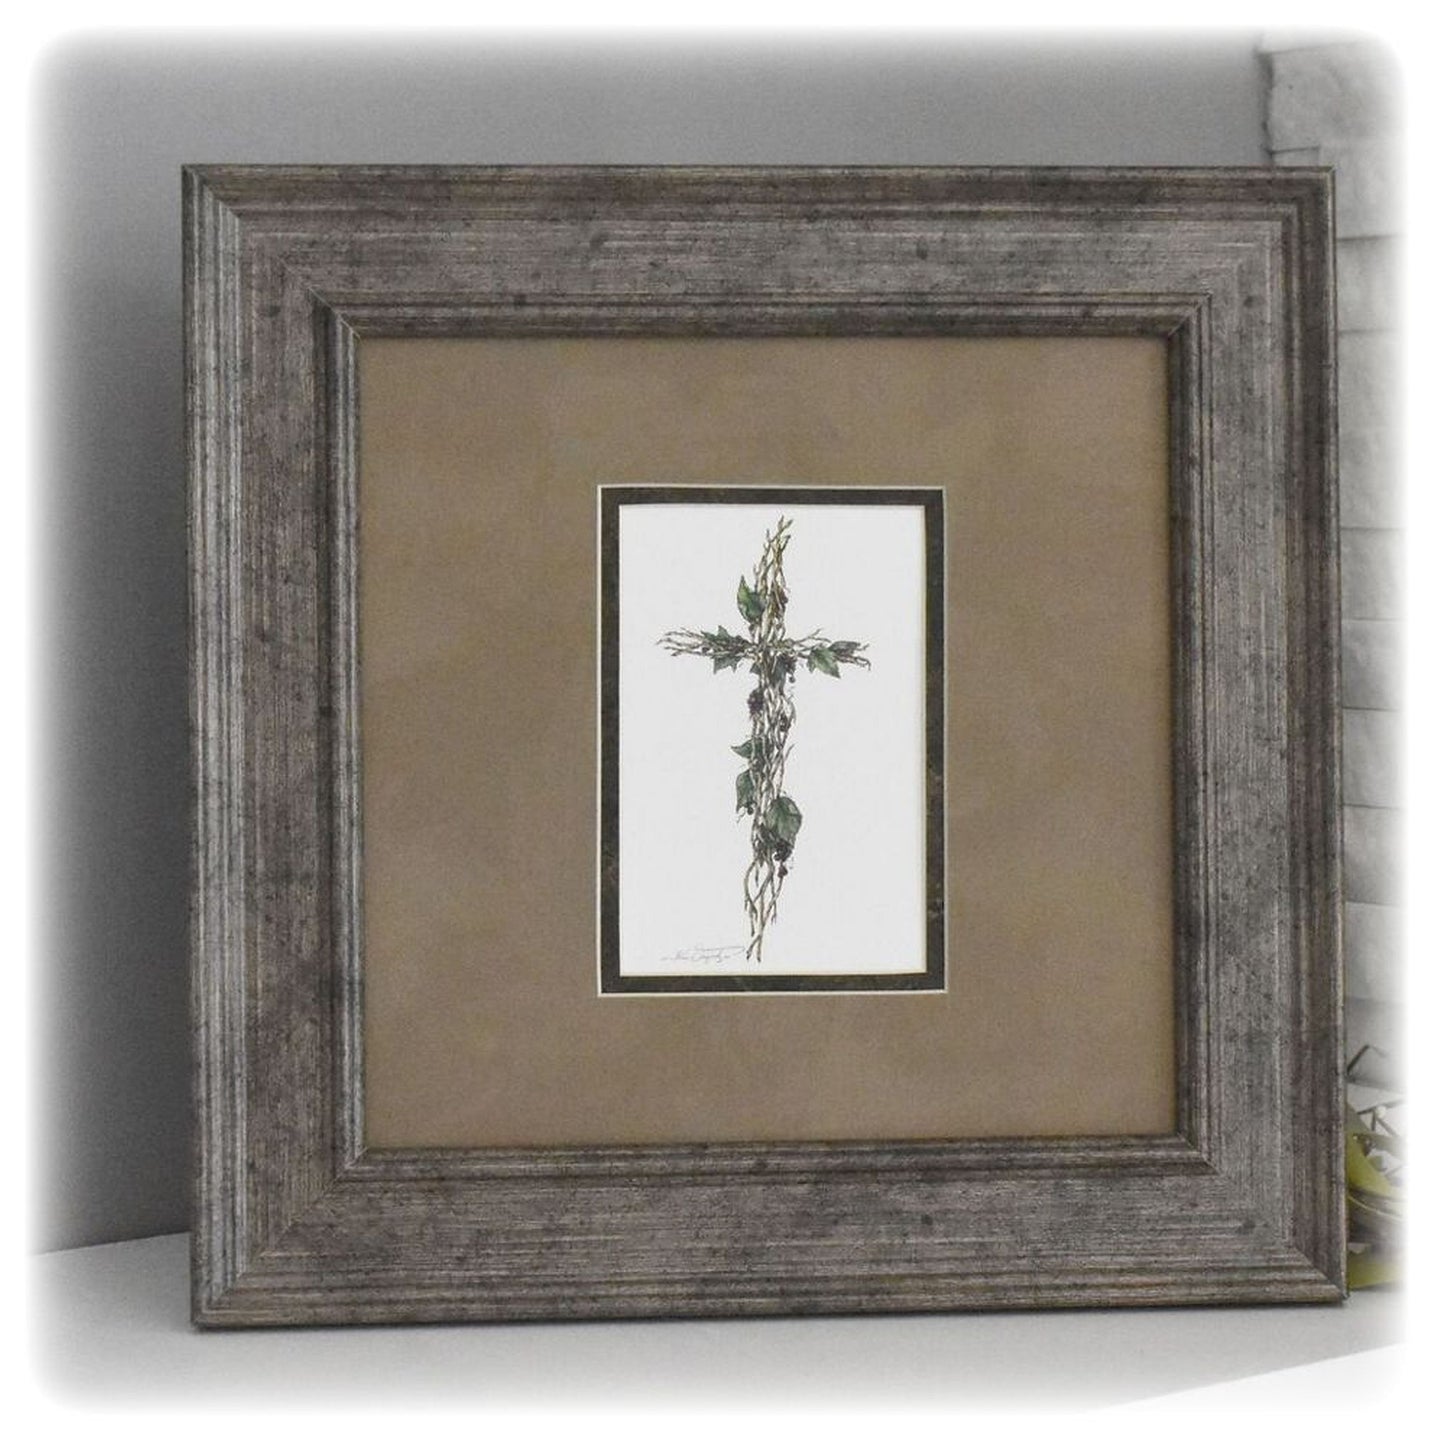 Memorial Framed Art Sympathy Gift - "Grapevine Cross"